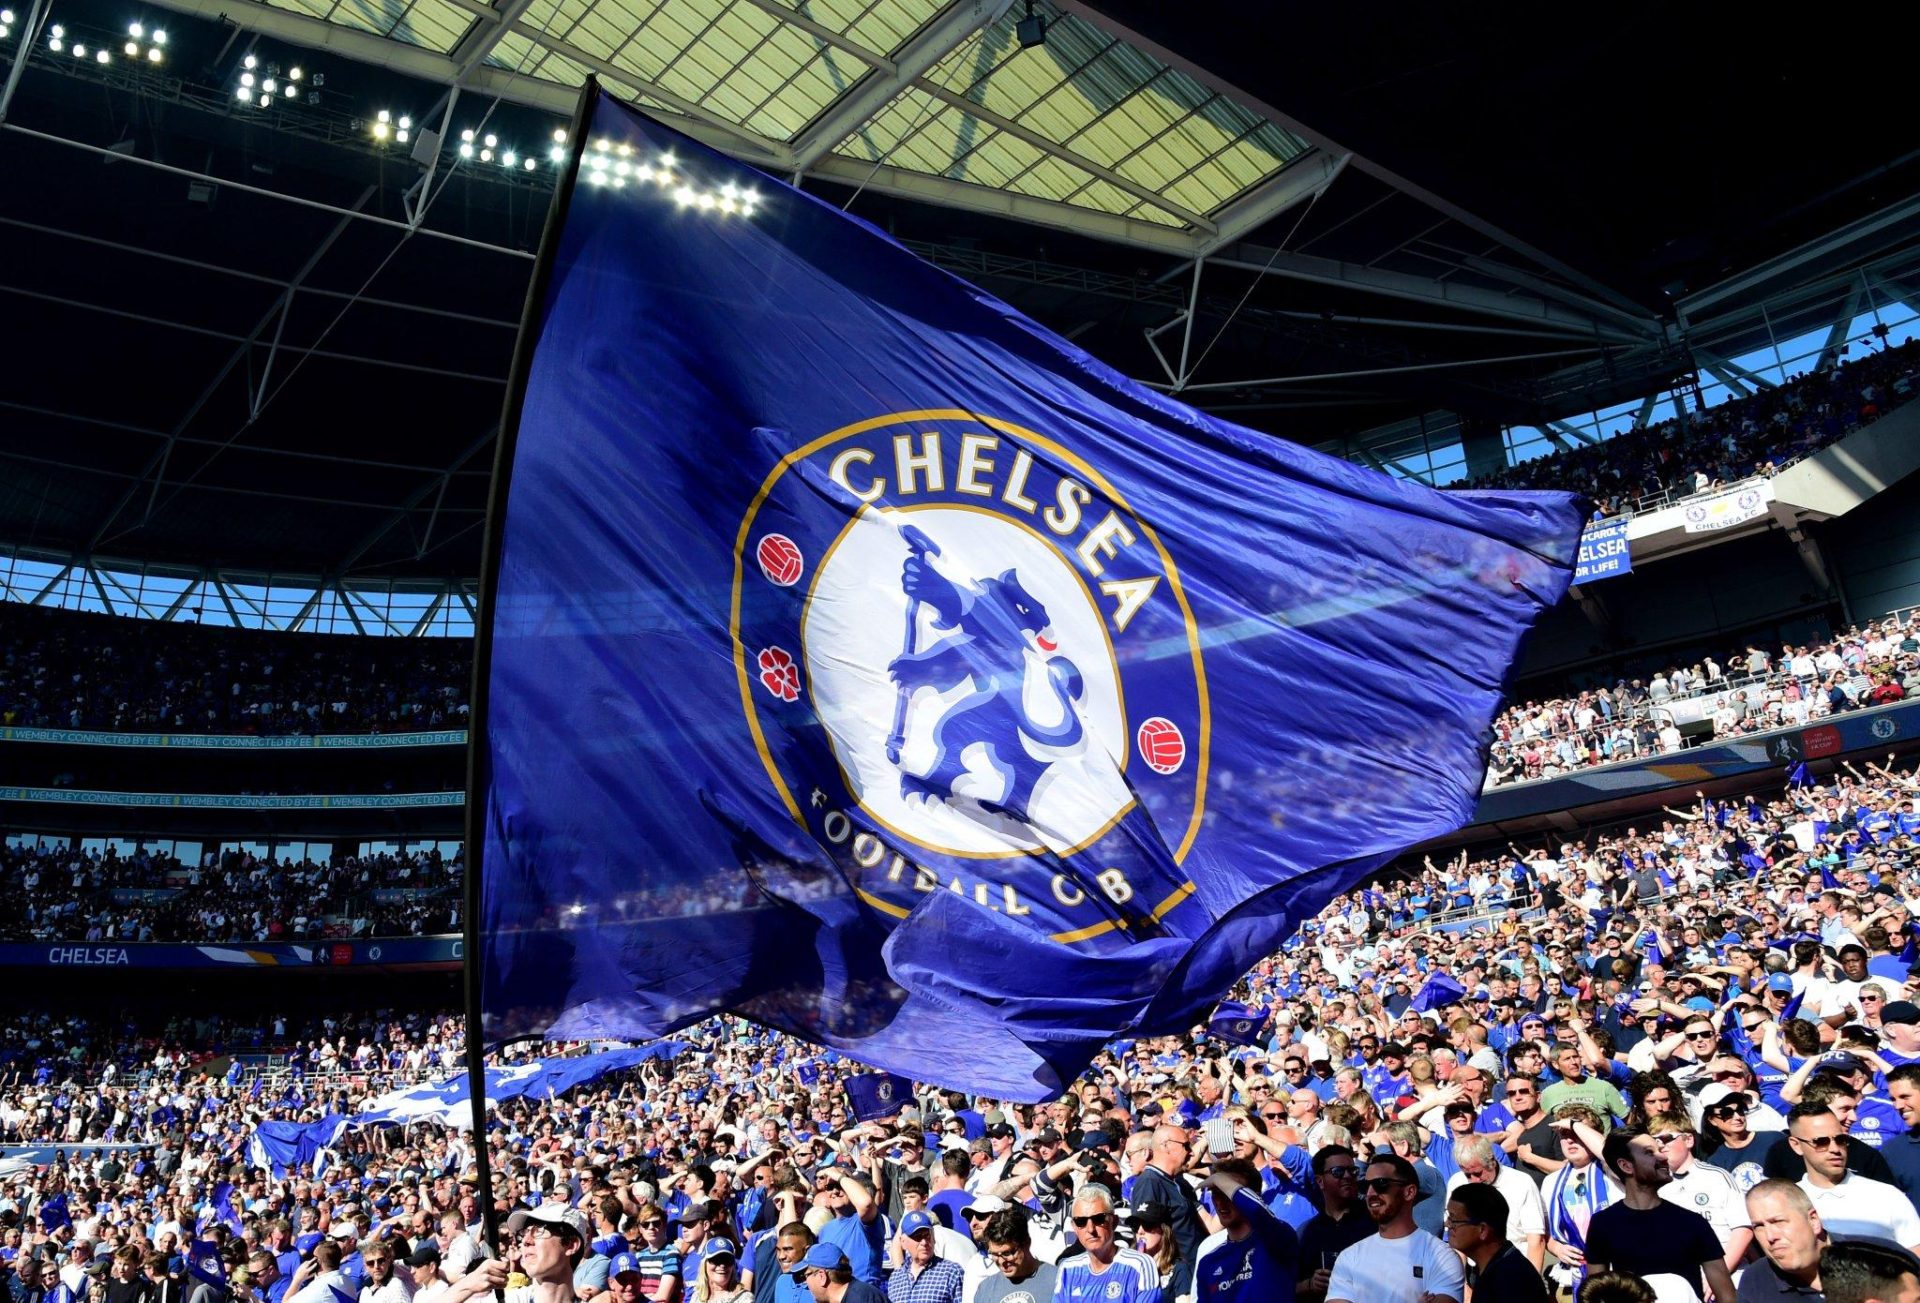 El Chelsea hace oficial la venta del club